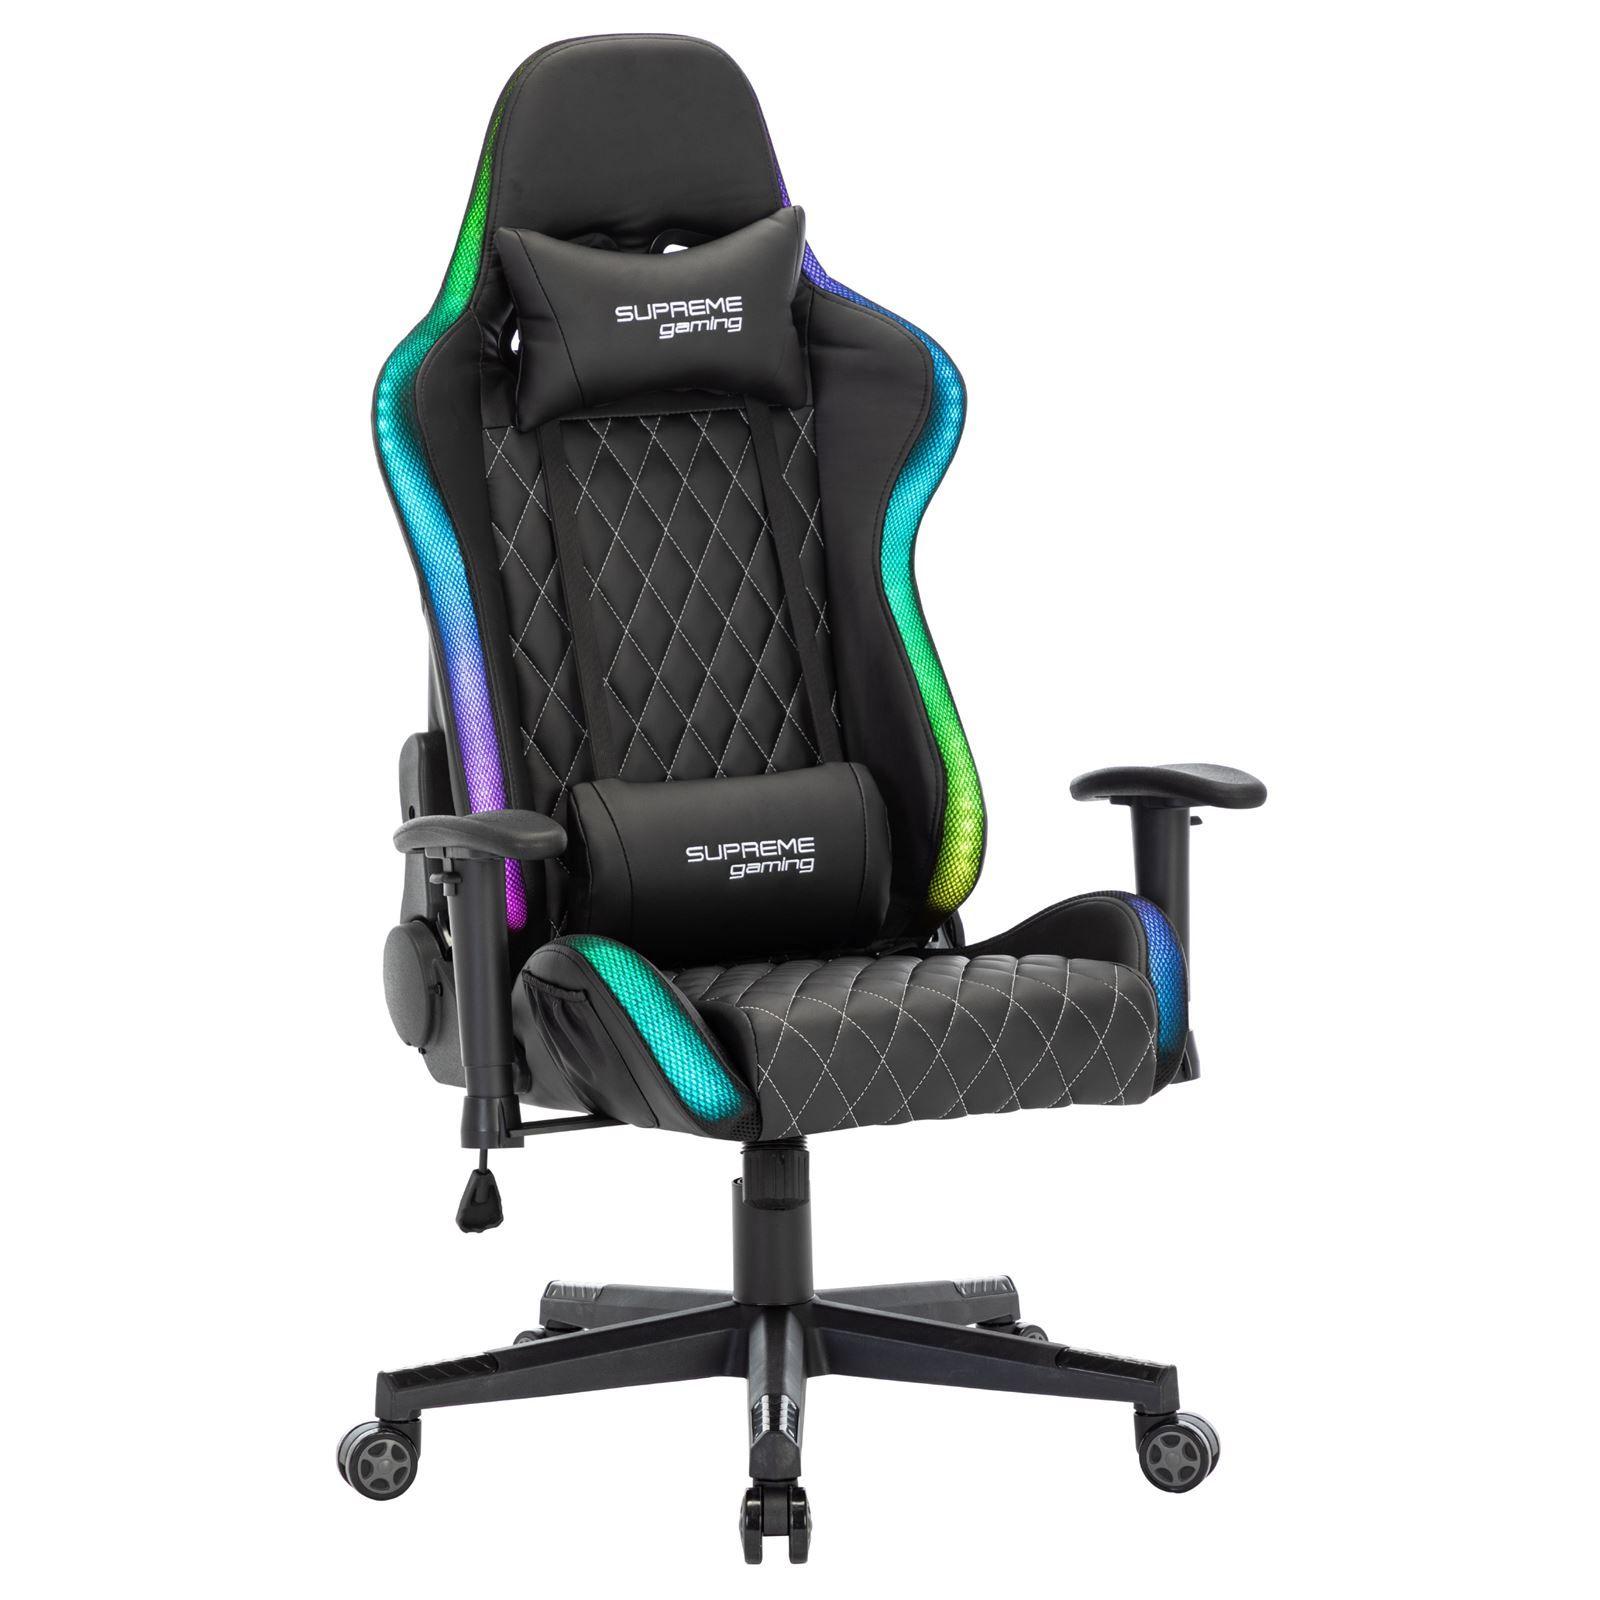 Chaise de bureau gaming LEGEND avec éclairage LED fauteuil gamer  ergonomique pivotant, siège à roulettes revêtement synthétique noir